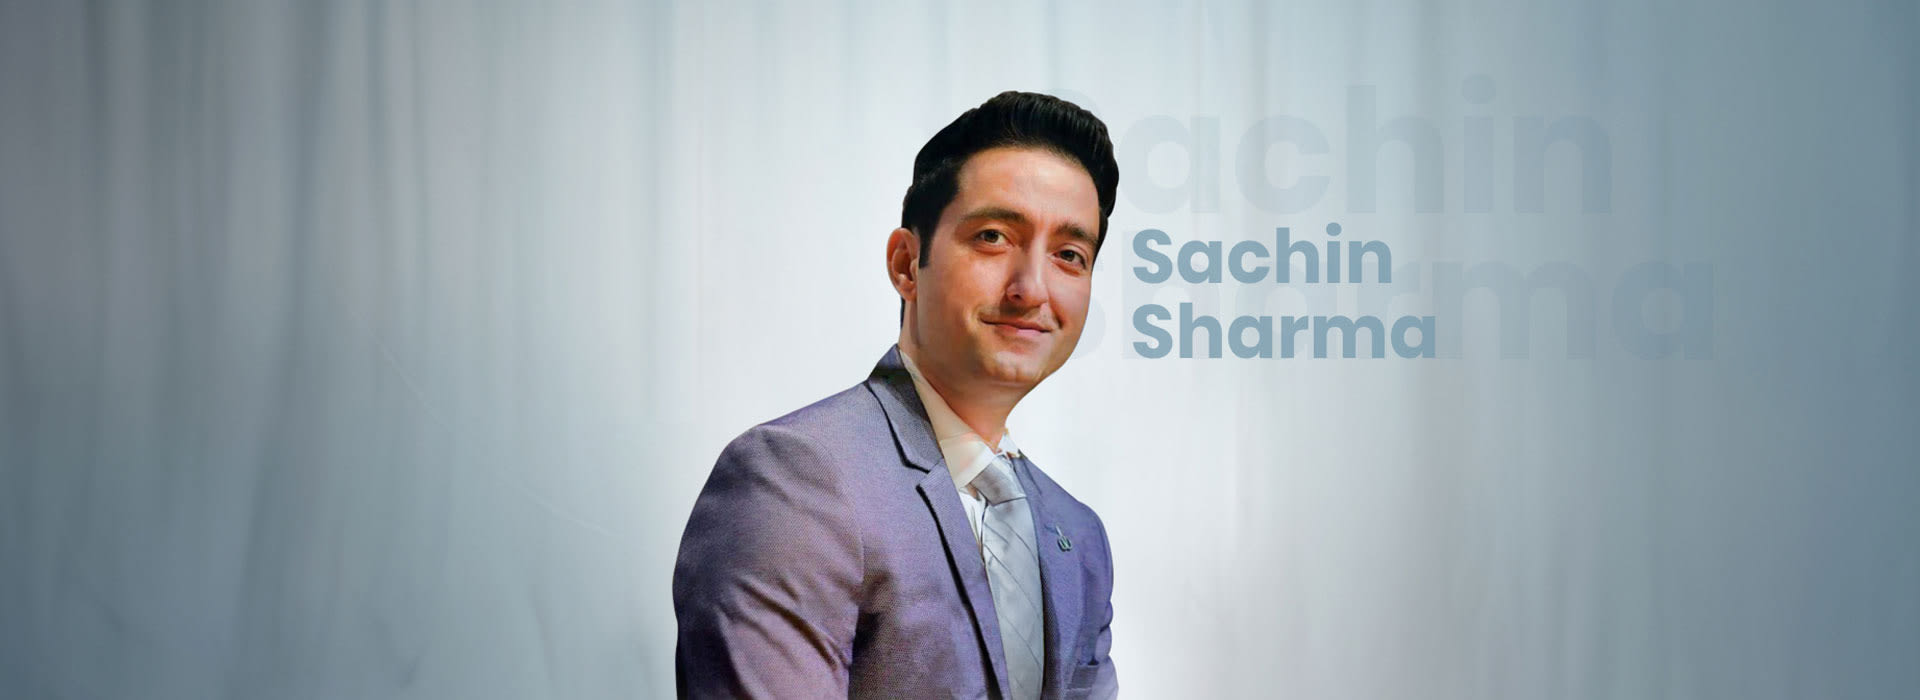 Sachin Sharma